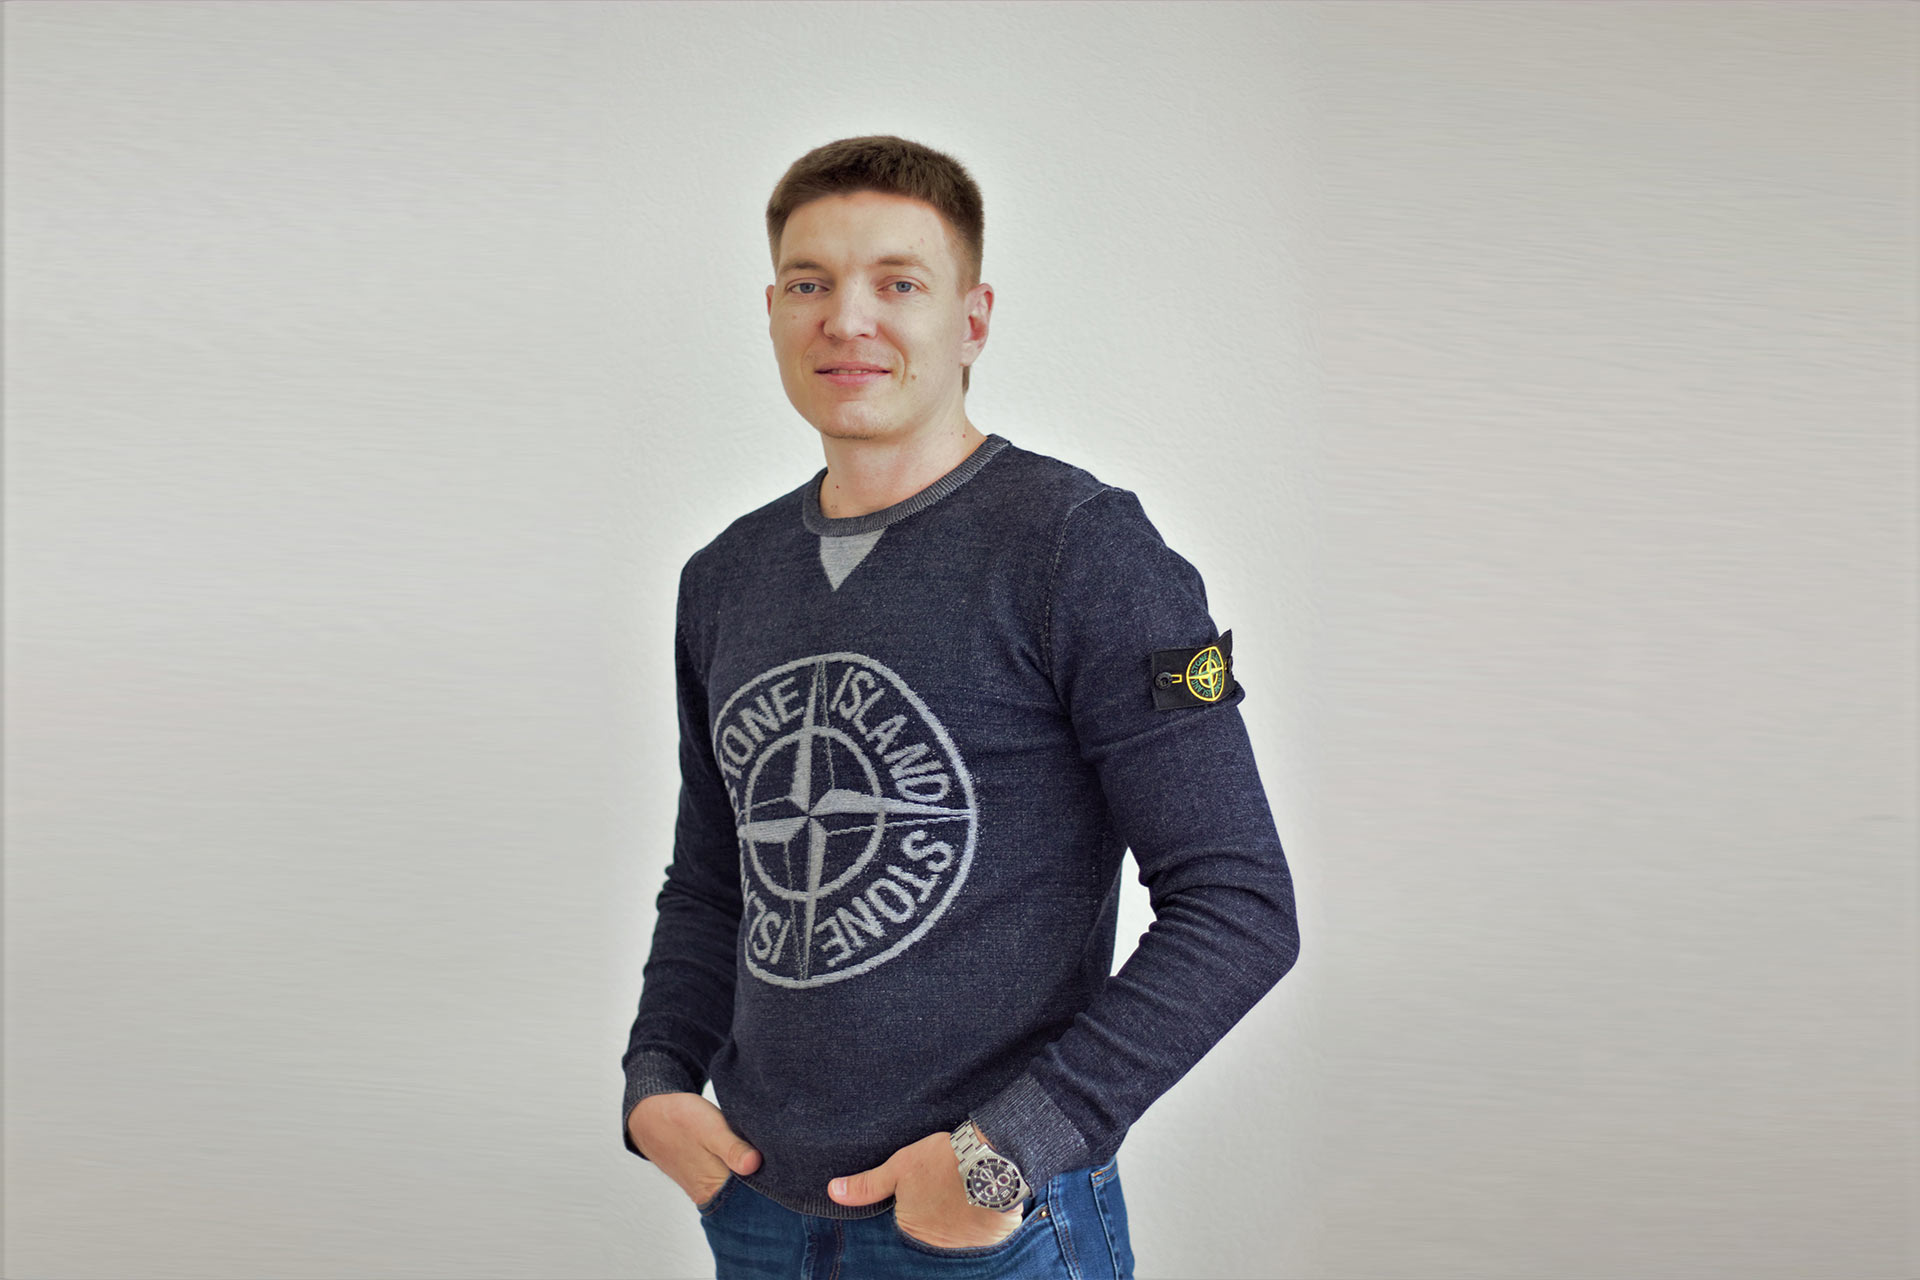 Кирилл Дюков, основатель 3 бизнес-проектов в сфере франчайзинга